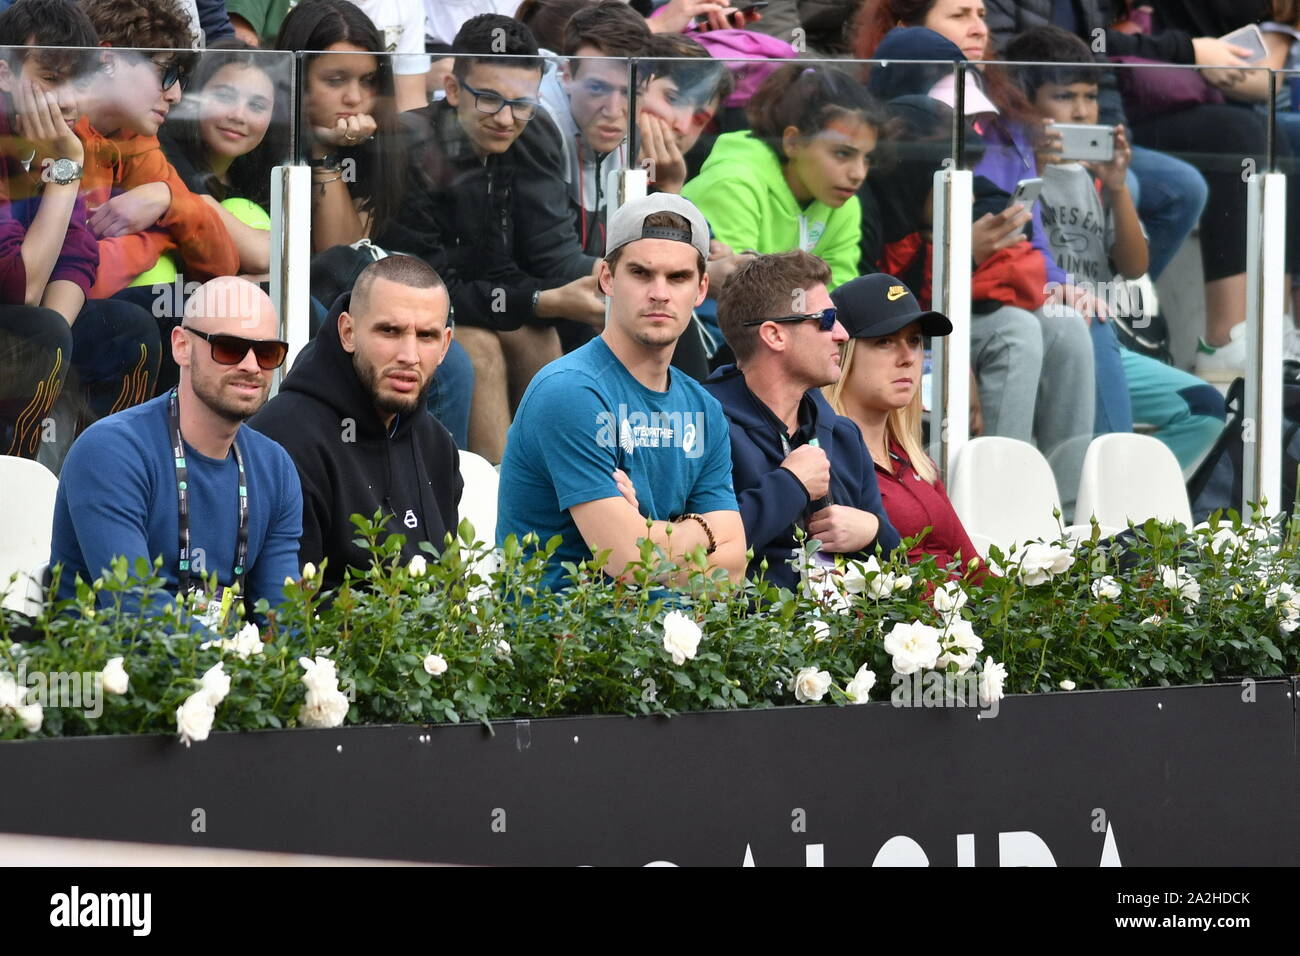 Elina svitolina passare la partita del fidanzato monfils durante Roma Internazionali BNL 2019 , roma, Italia, 13 maggio 2019, Tennis Tennis Internazionali Foto Stock